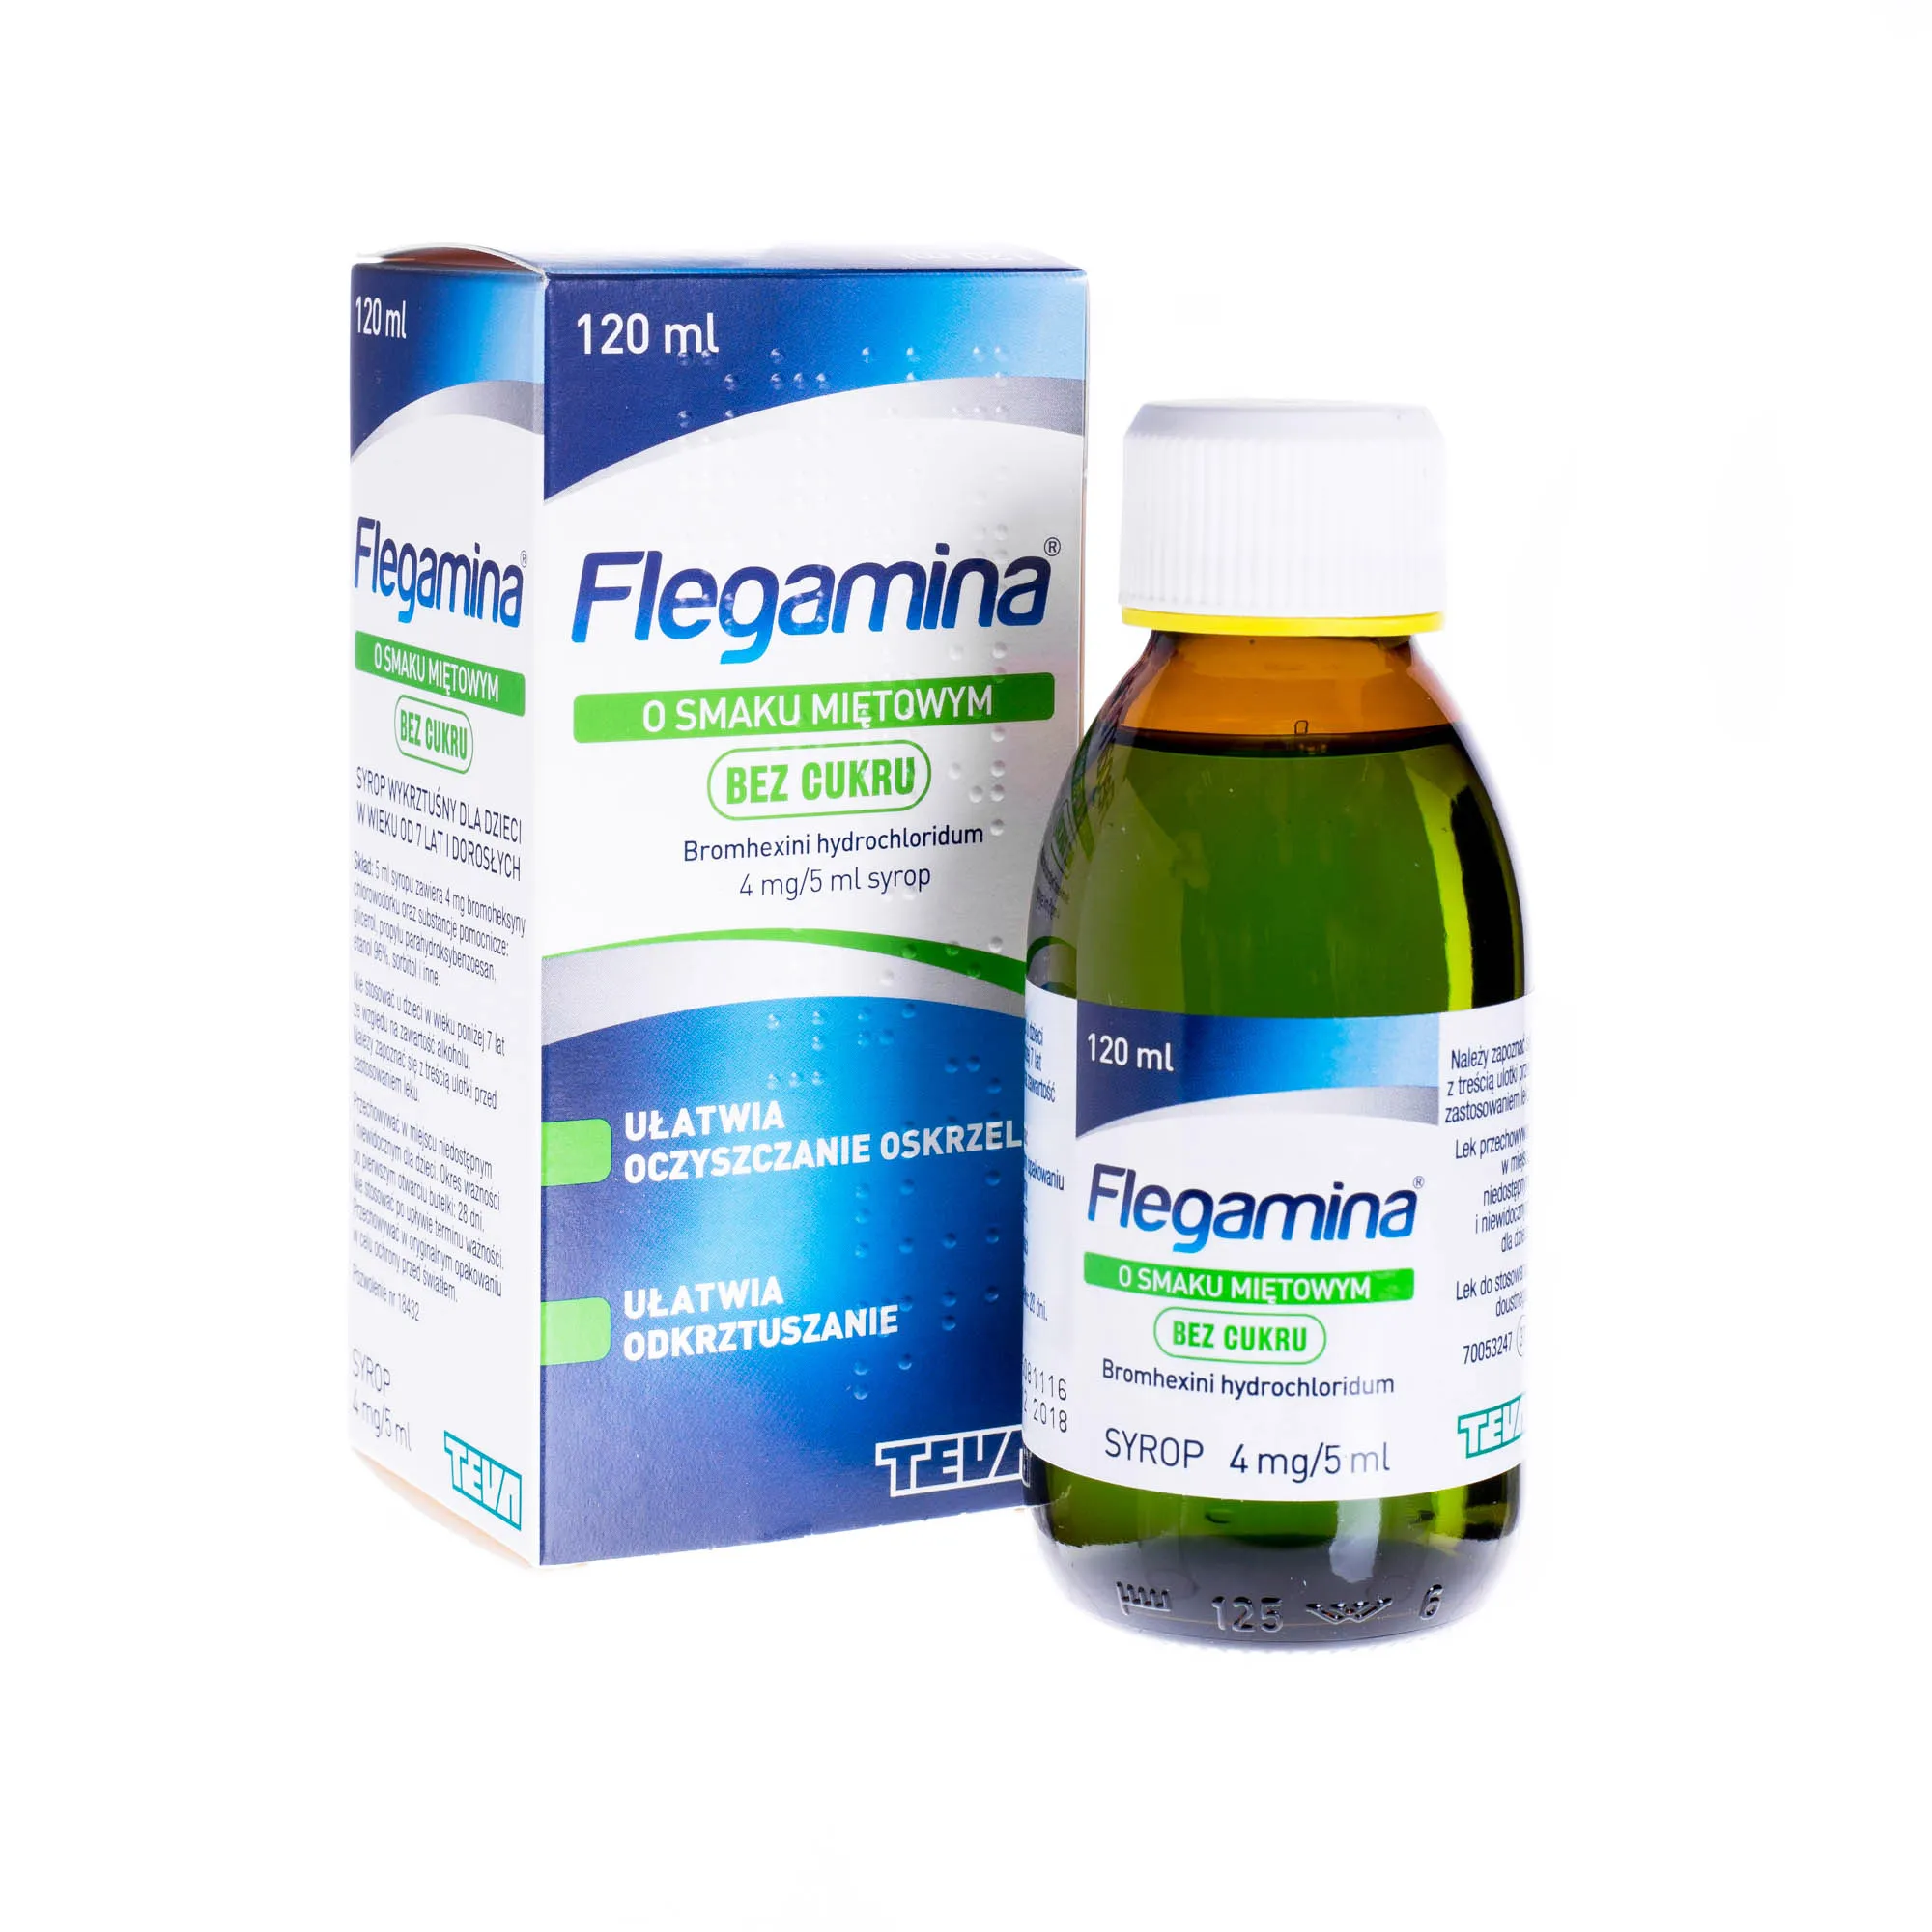 Flegamina, o smaku miętowym bez cuktru Bromhexini hydrochloridum 4 mg/ 5 ml syrop, 120 ml